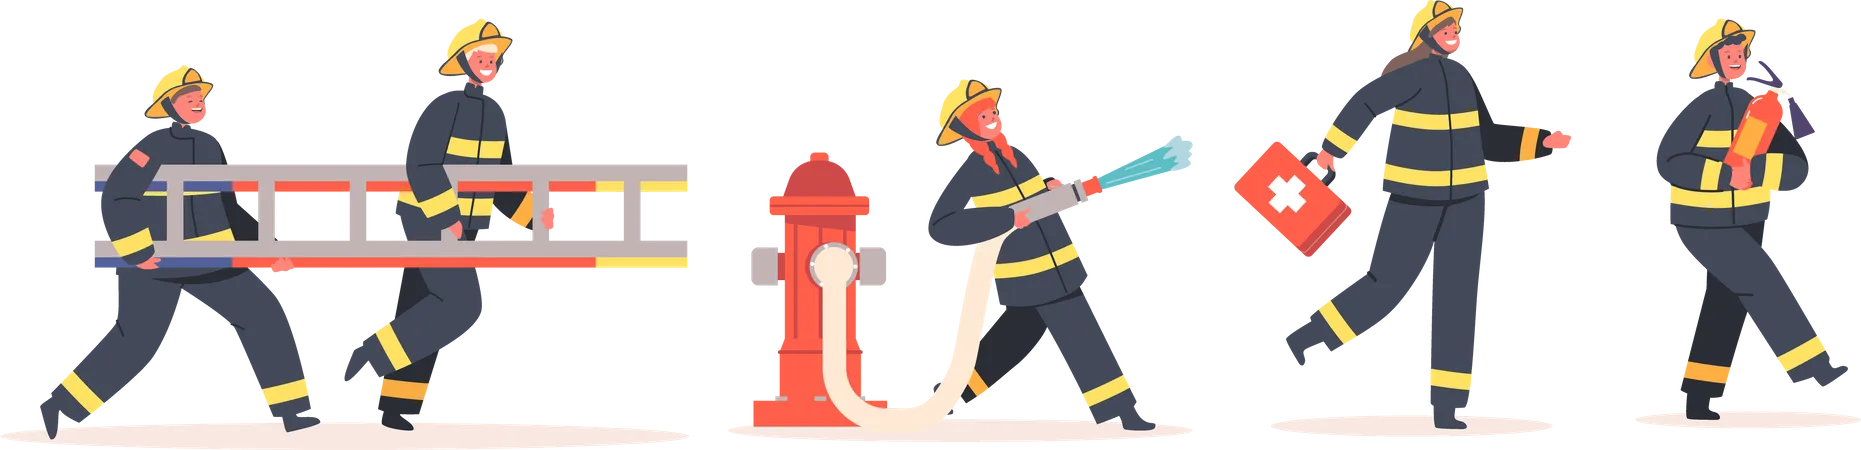 Sapeurs pompiers  Illustration